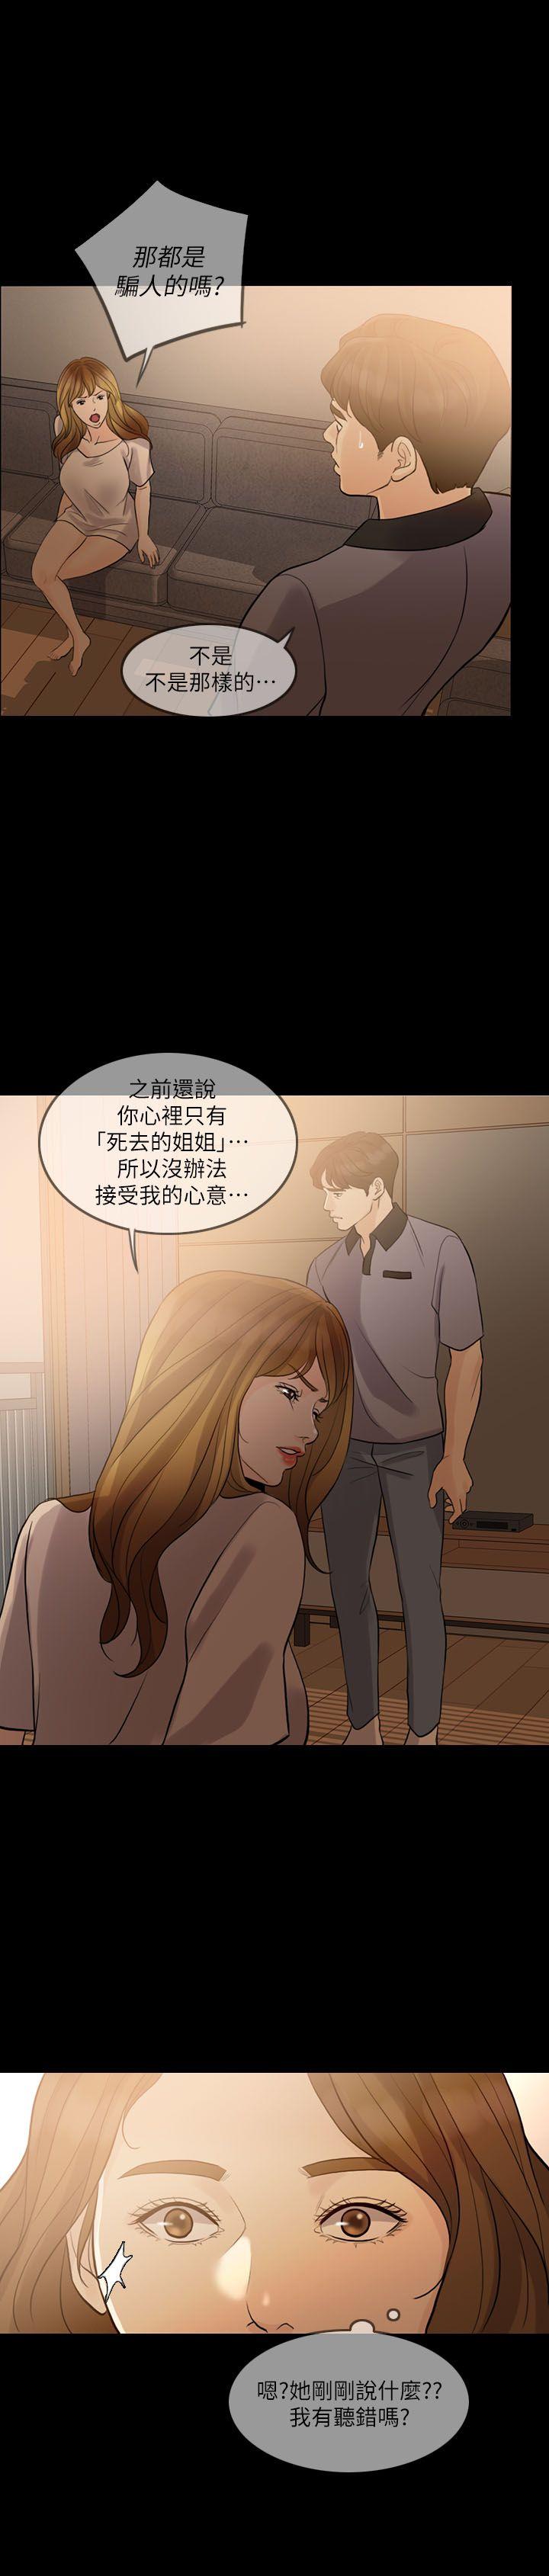 韩国污漫画 失控的愛 第9话 14